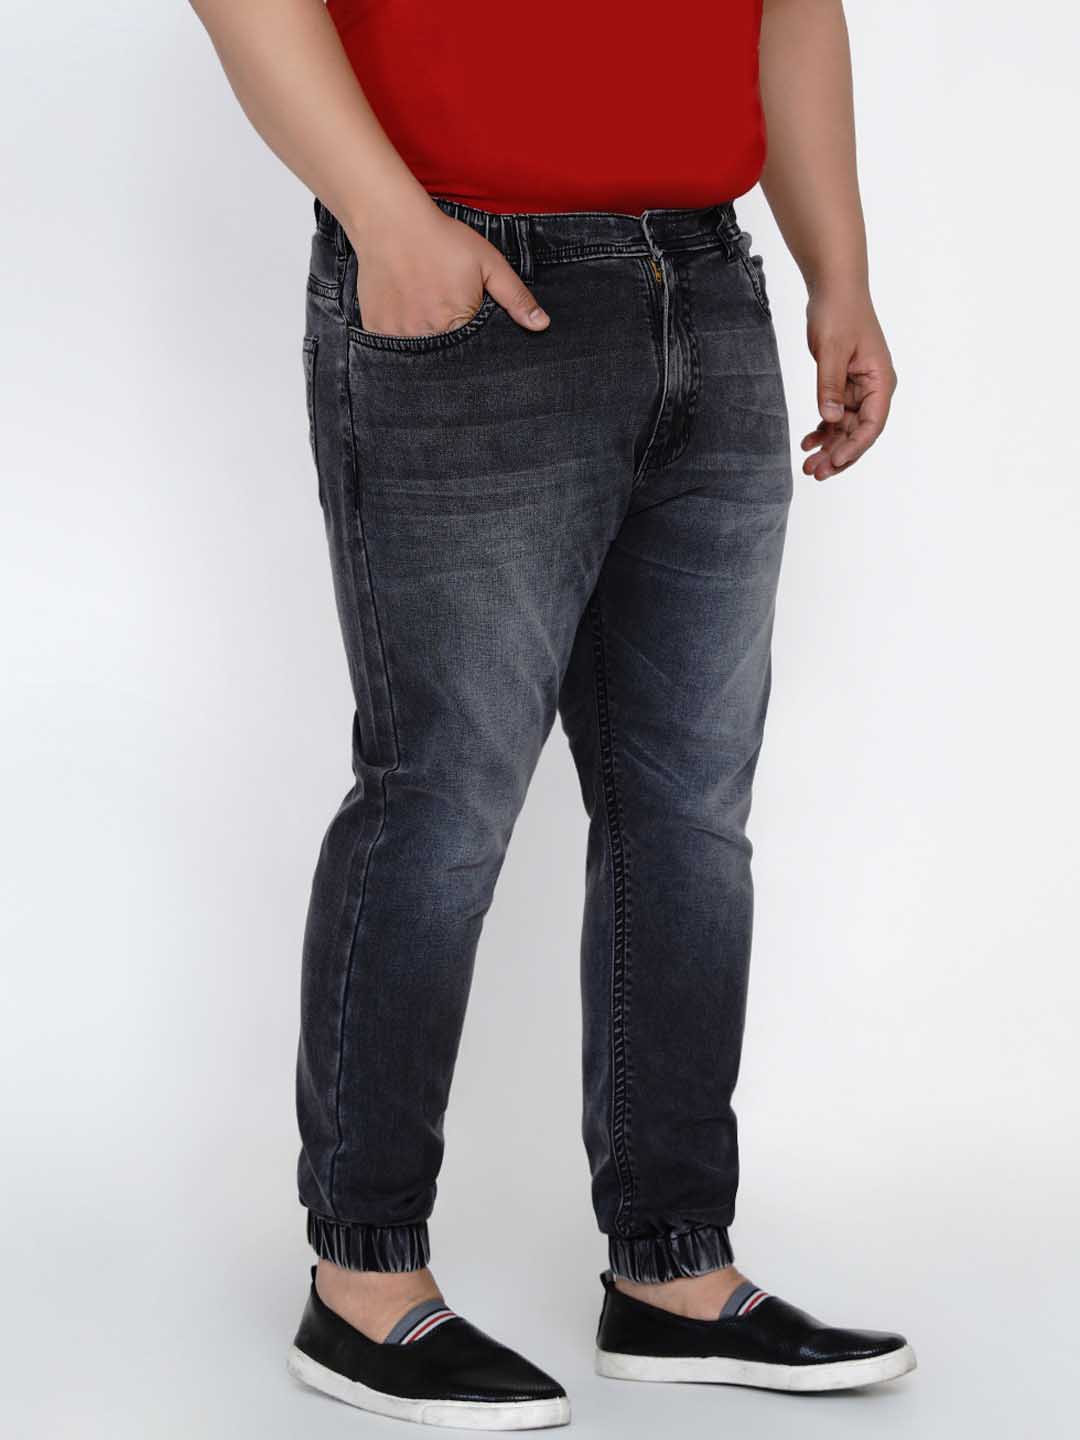 bottomwear/jeans/JPJ12135/jpj12135-2.jpg